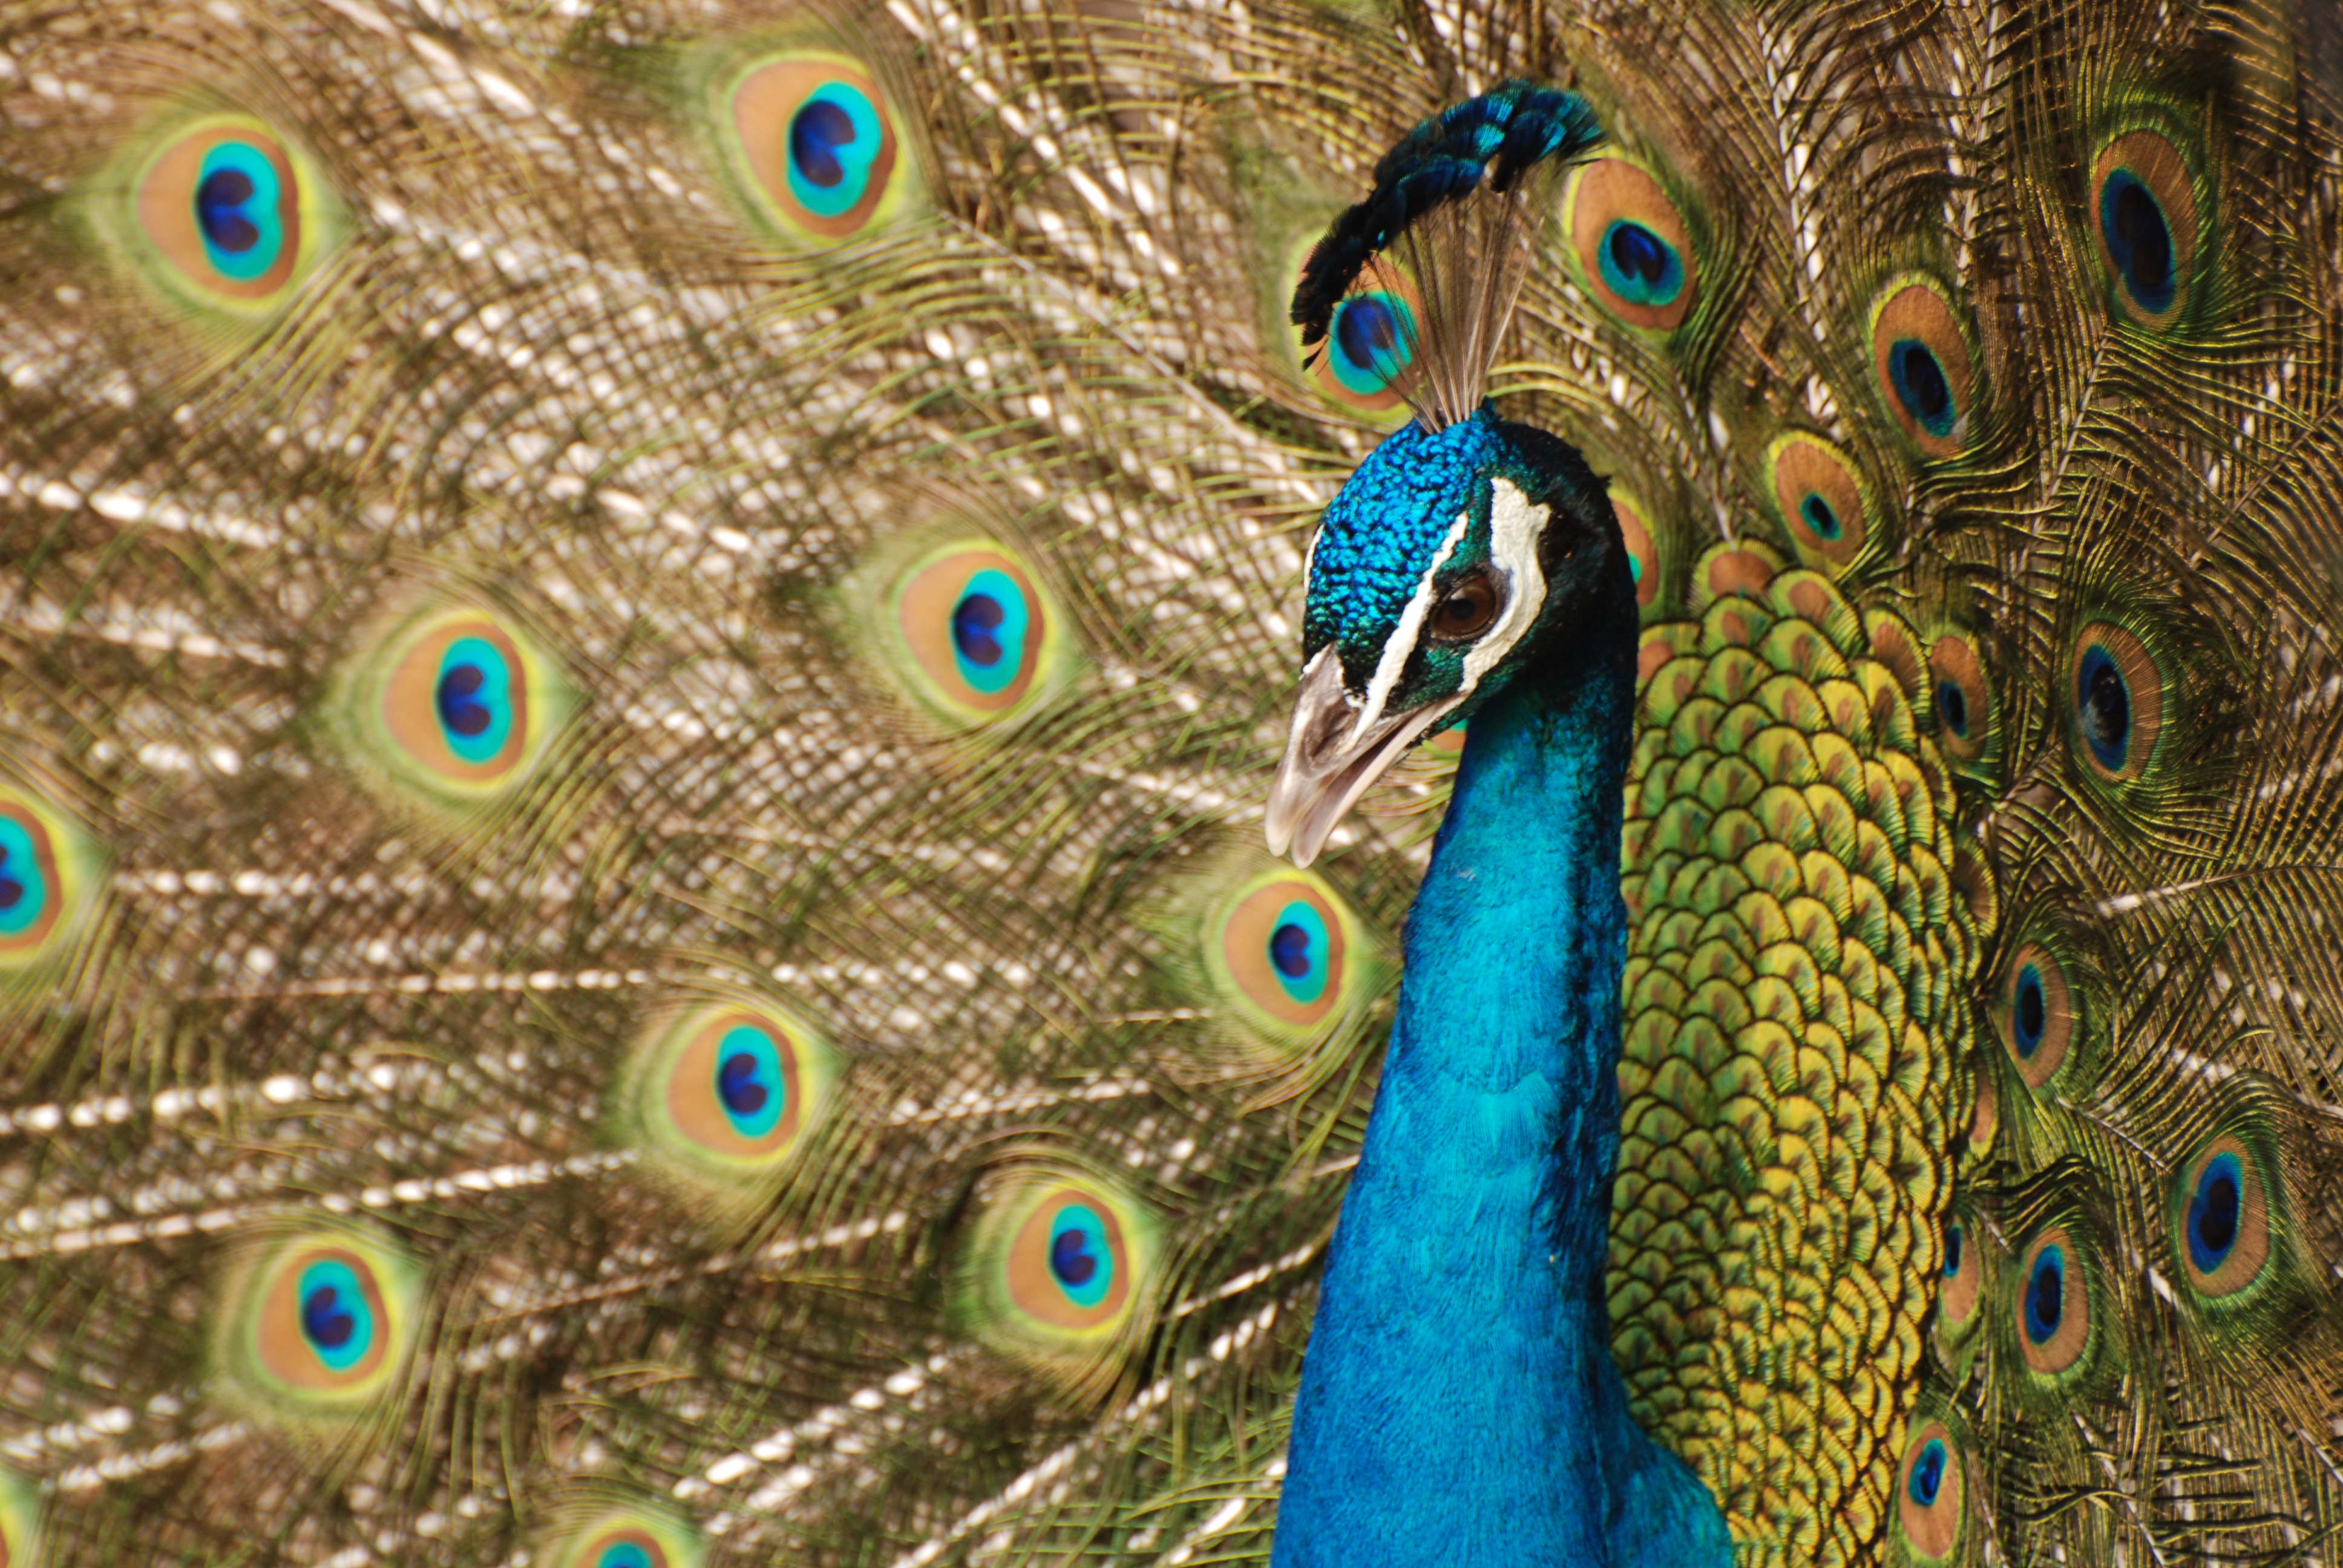 フリー画像 動物写真 鳥類 孔雀 クジャク インドクジャク 画像素材なら 無料 フリー写真素材のフリーフォト